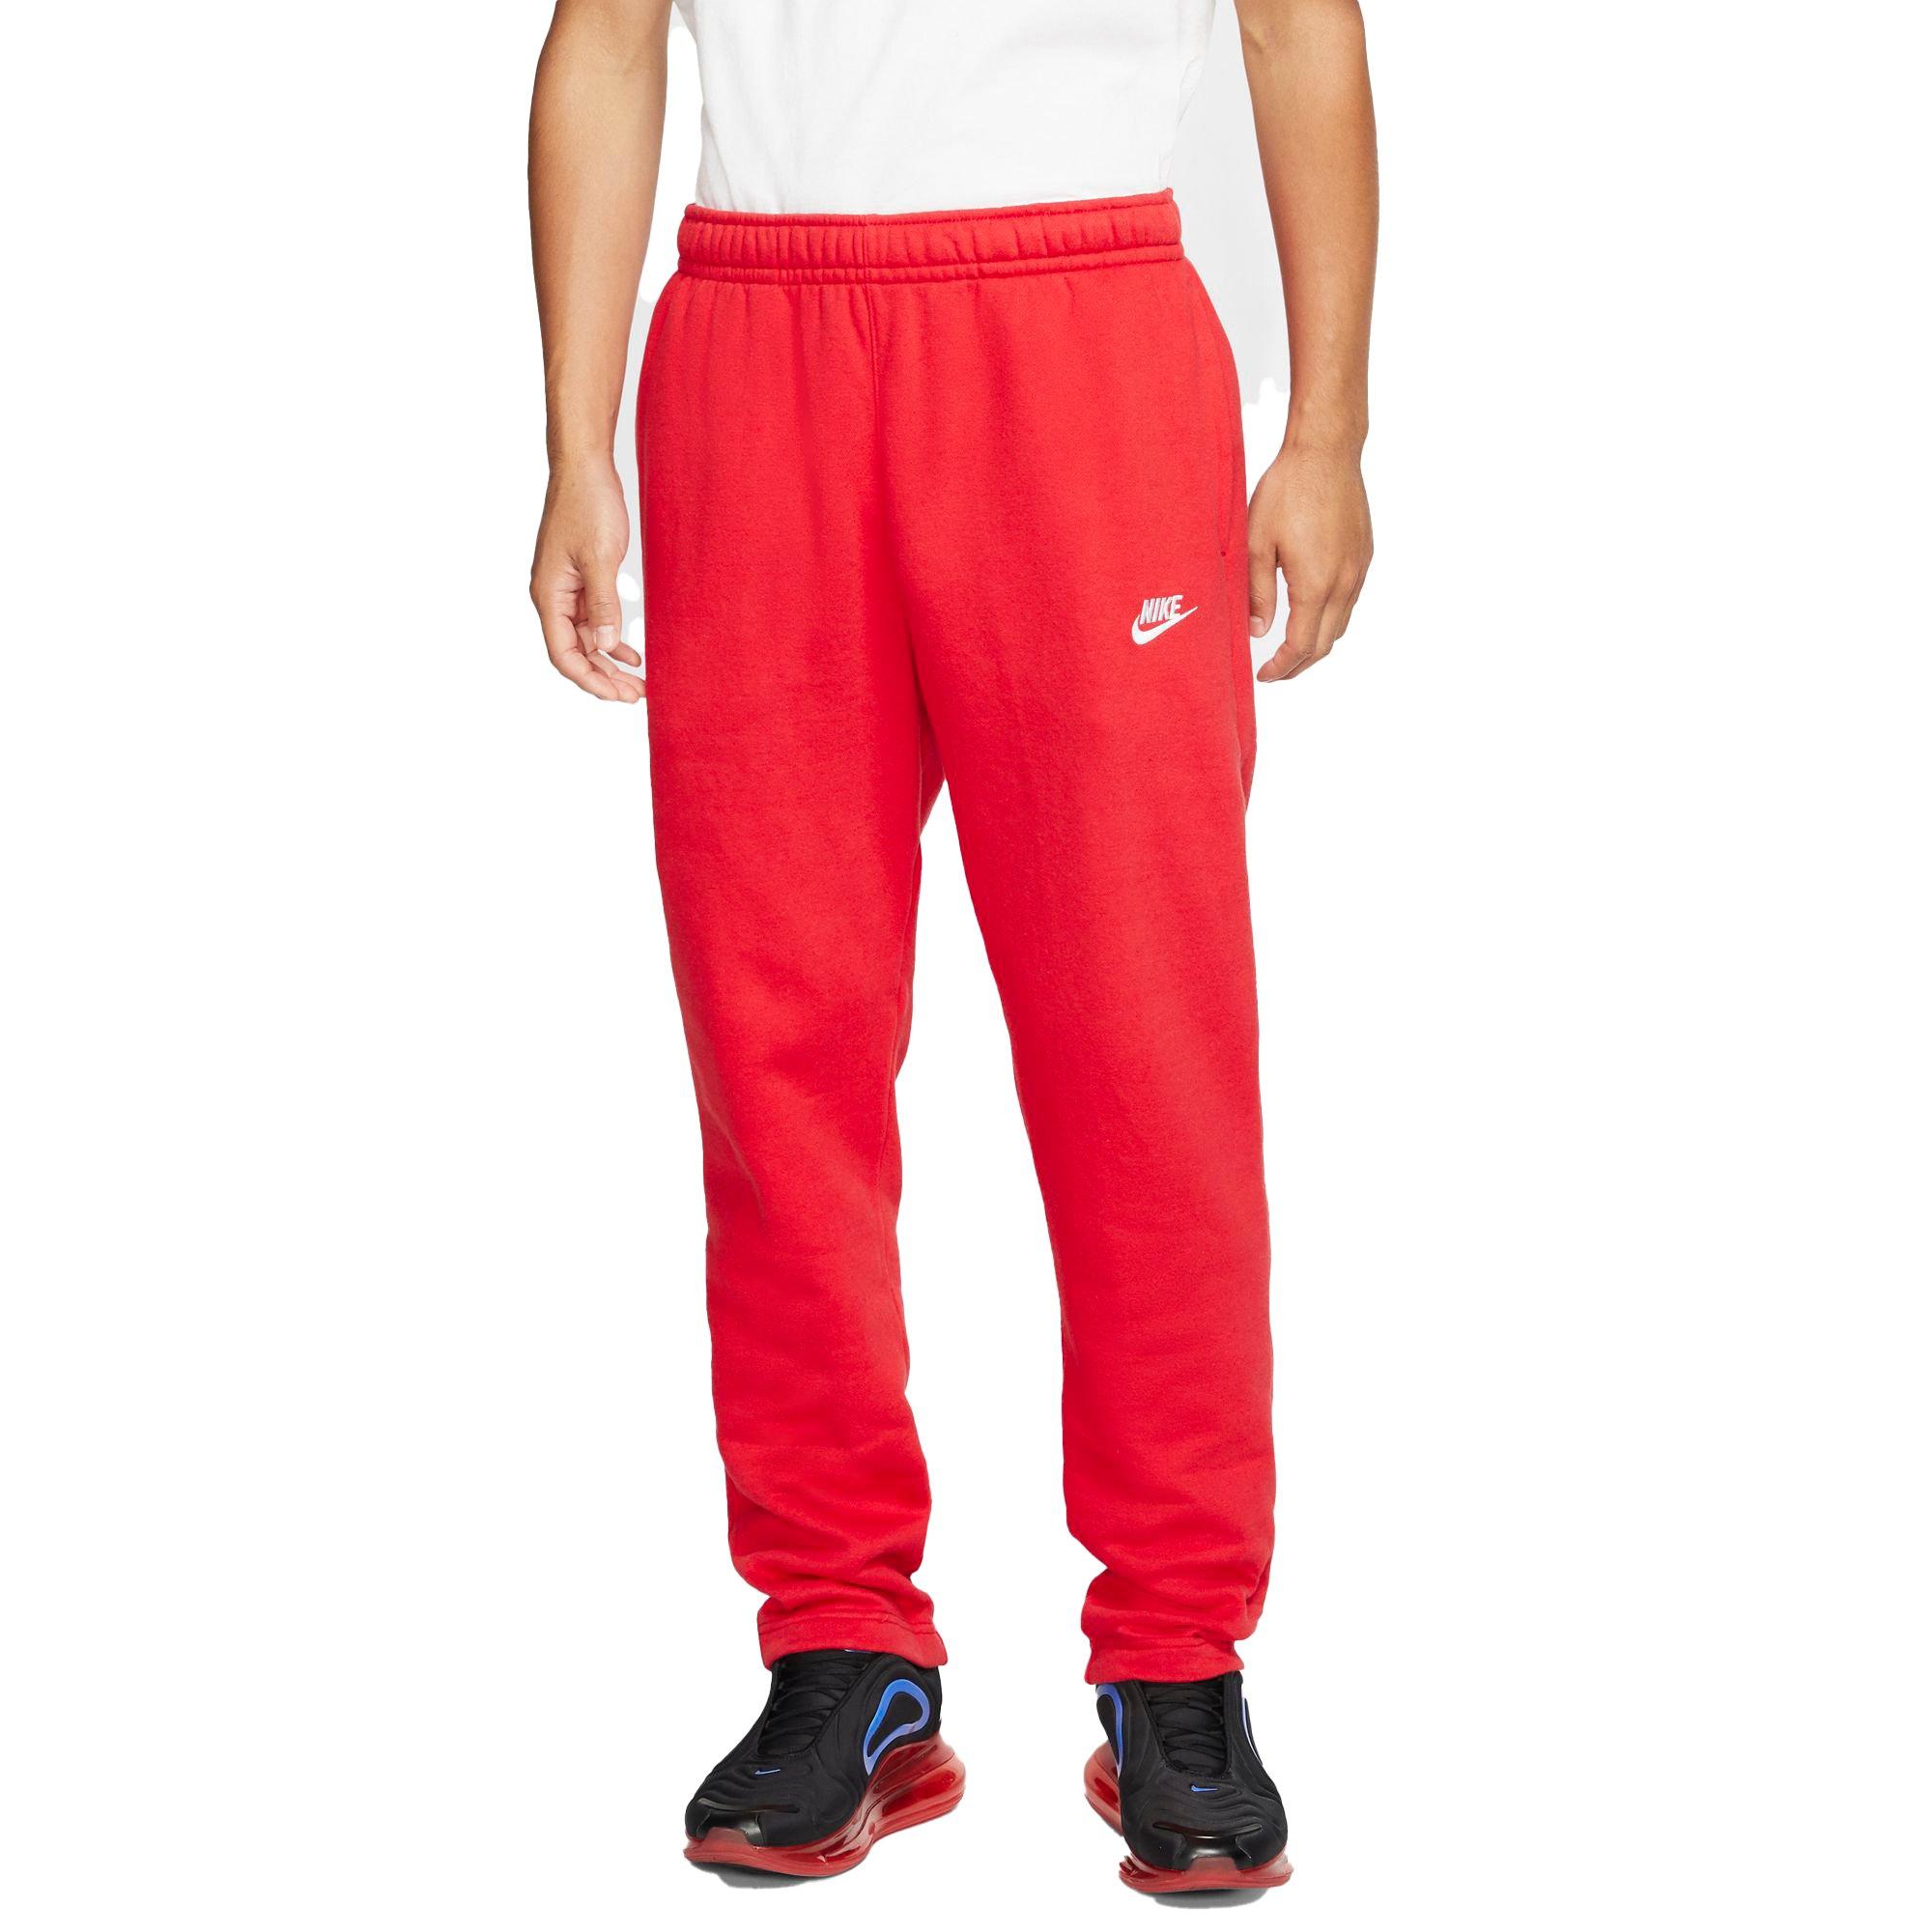 Inspiratie Verbetering Robijn Nike Men's Sportswear Red Club Fleece Pants